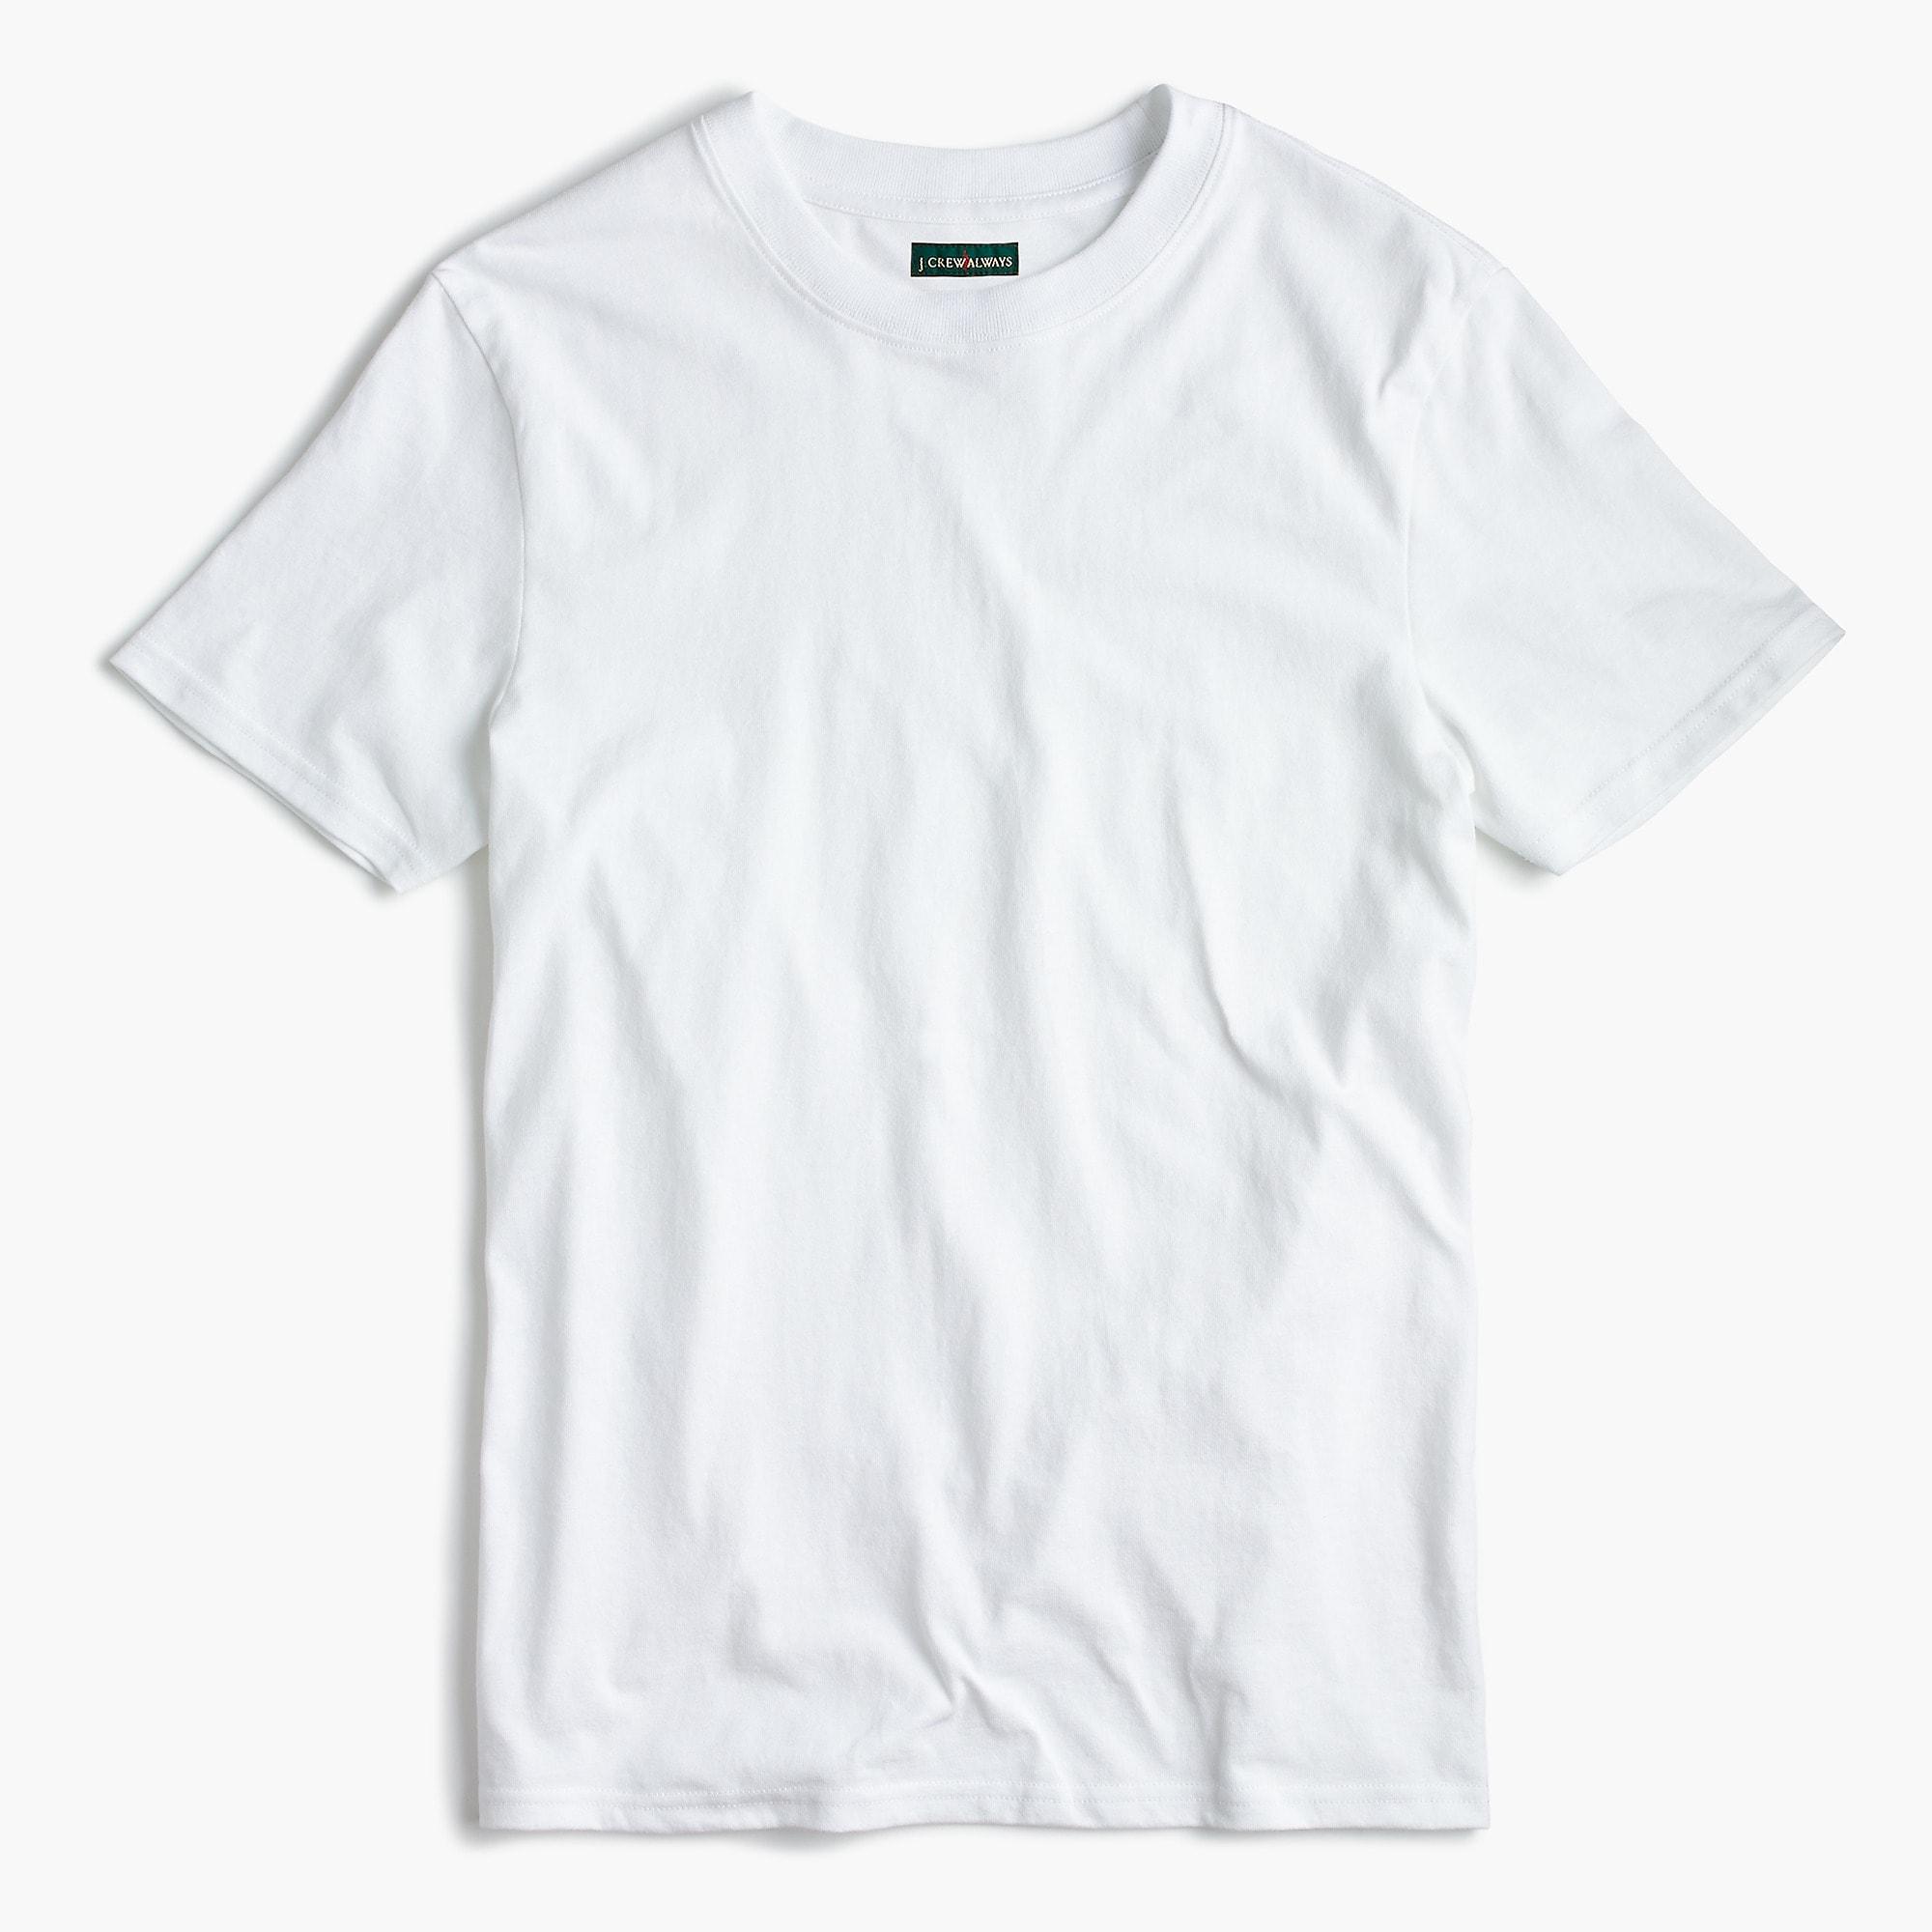 J.Crew 1994 T-shirt in White for Men